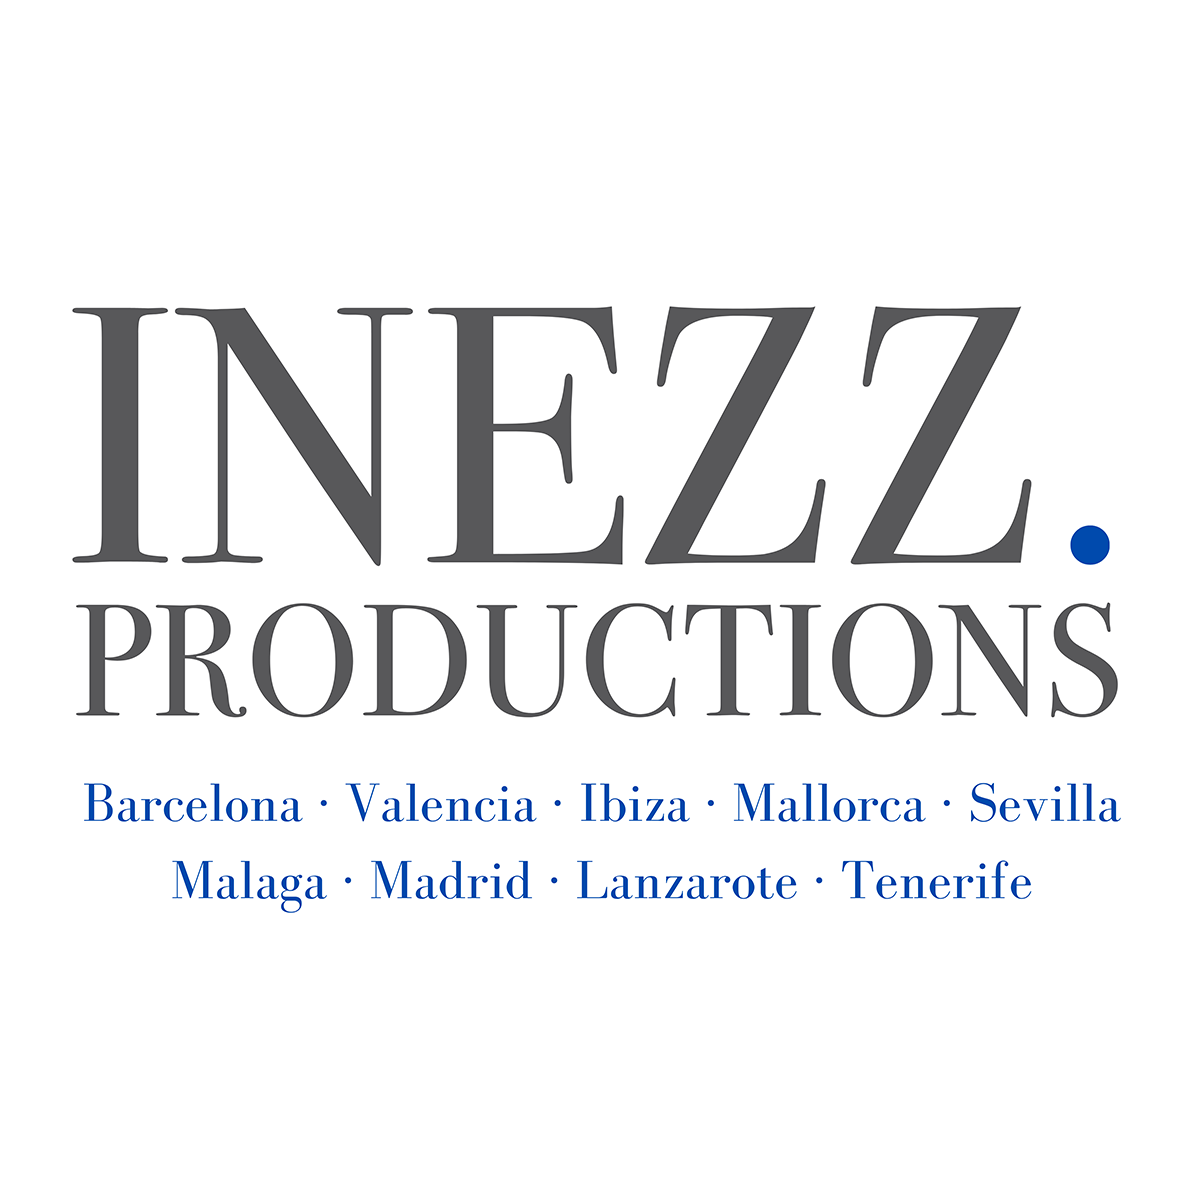 INEZZ Production